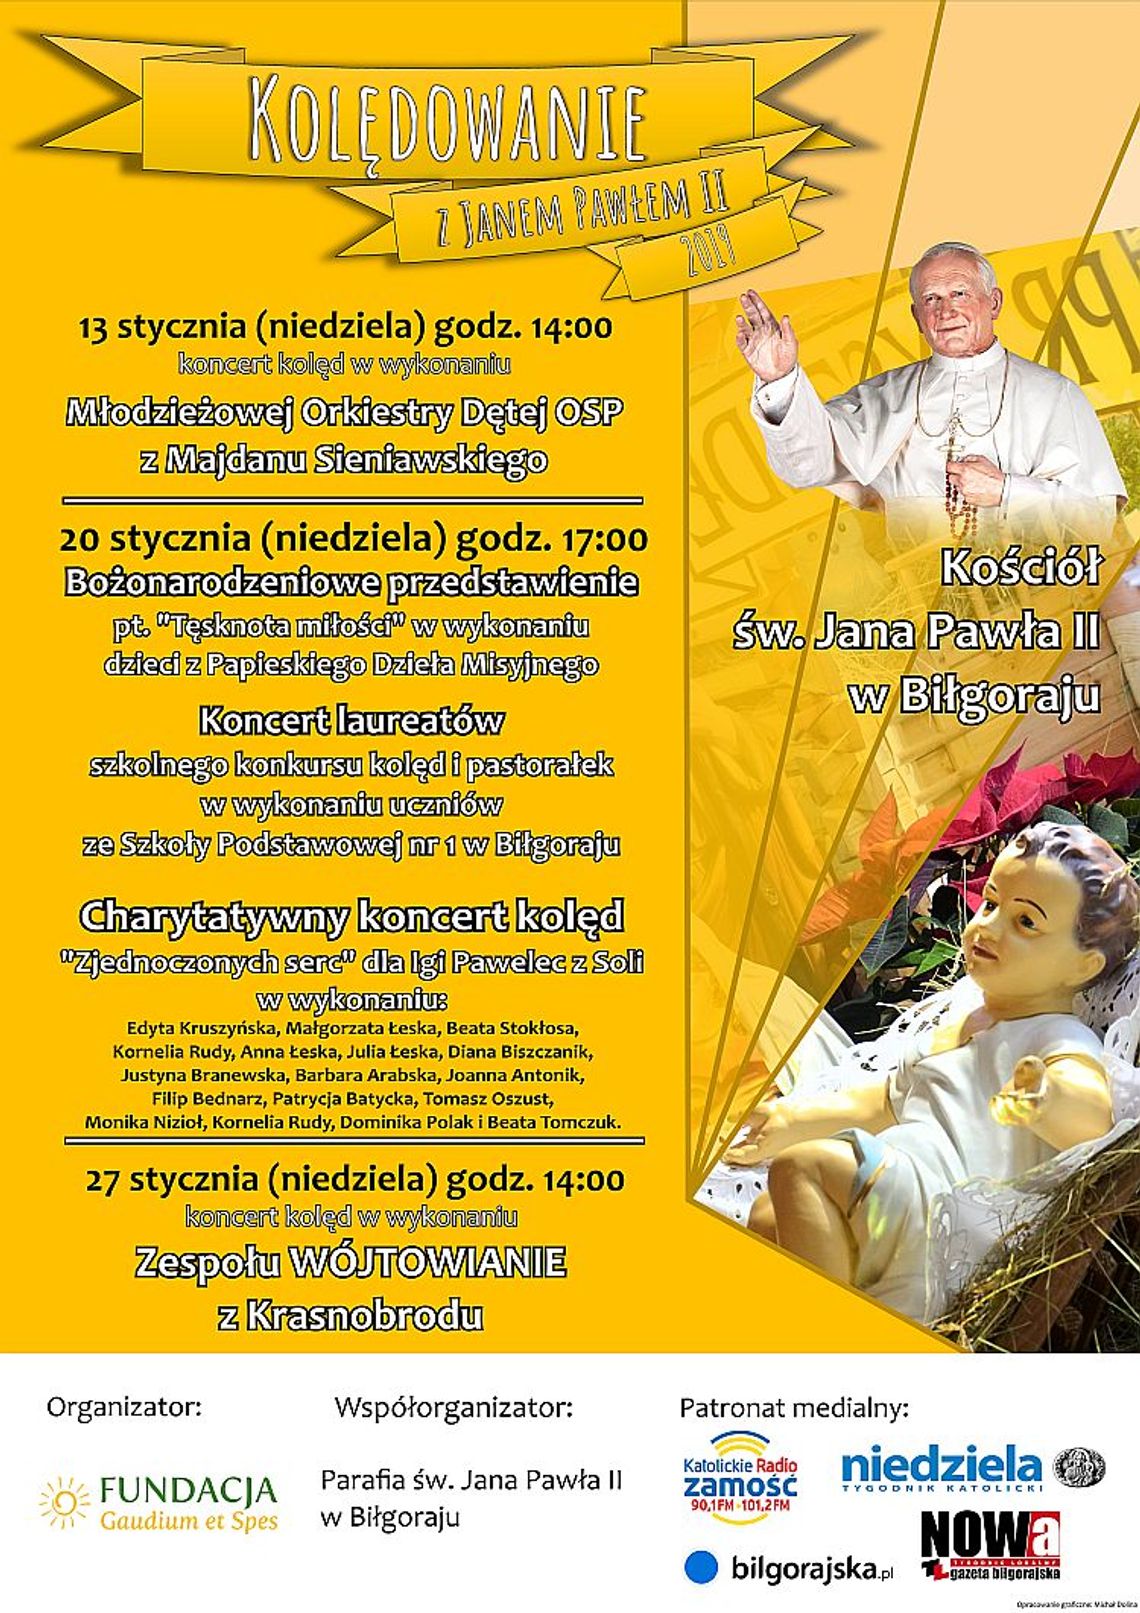 Kolędowanie z Janem Pawłem II w Biłgoraju 13.01.2019, 20.01.2019, 27.01.2019